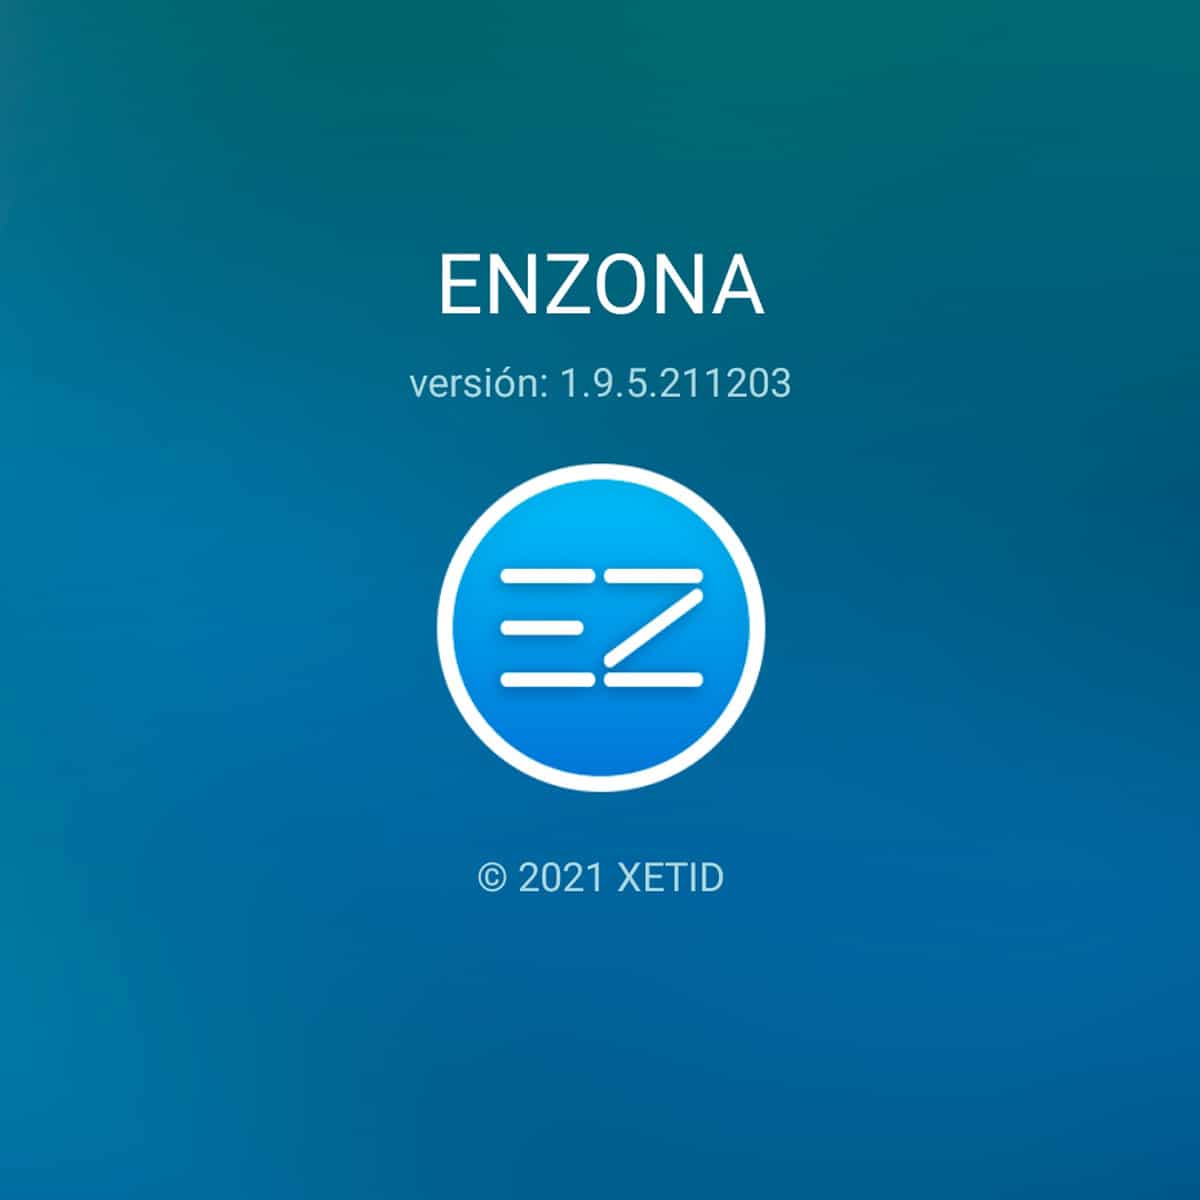 nueva version de enzona v1.9.5.211203